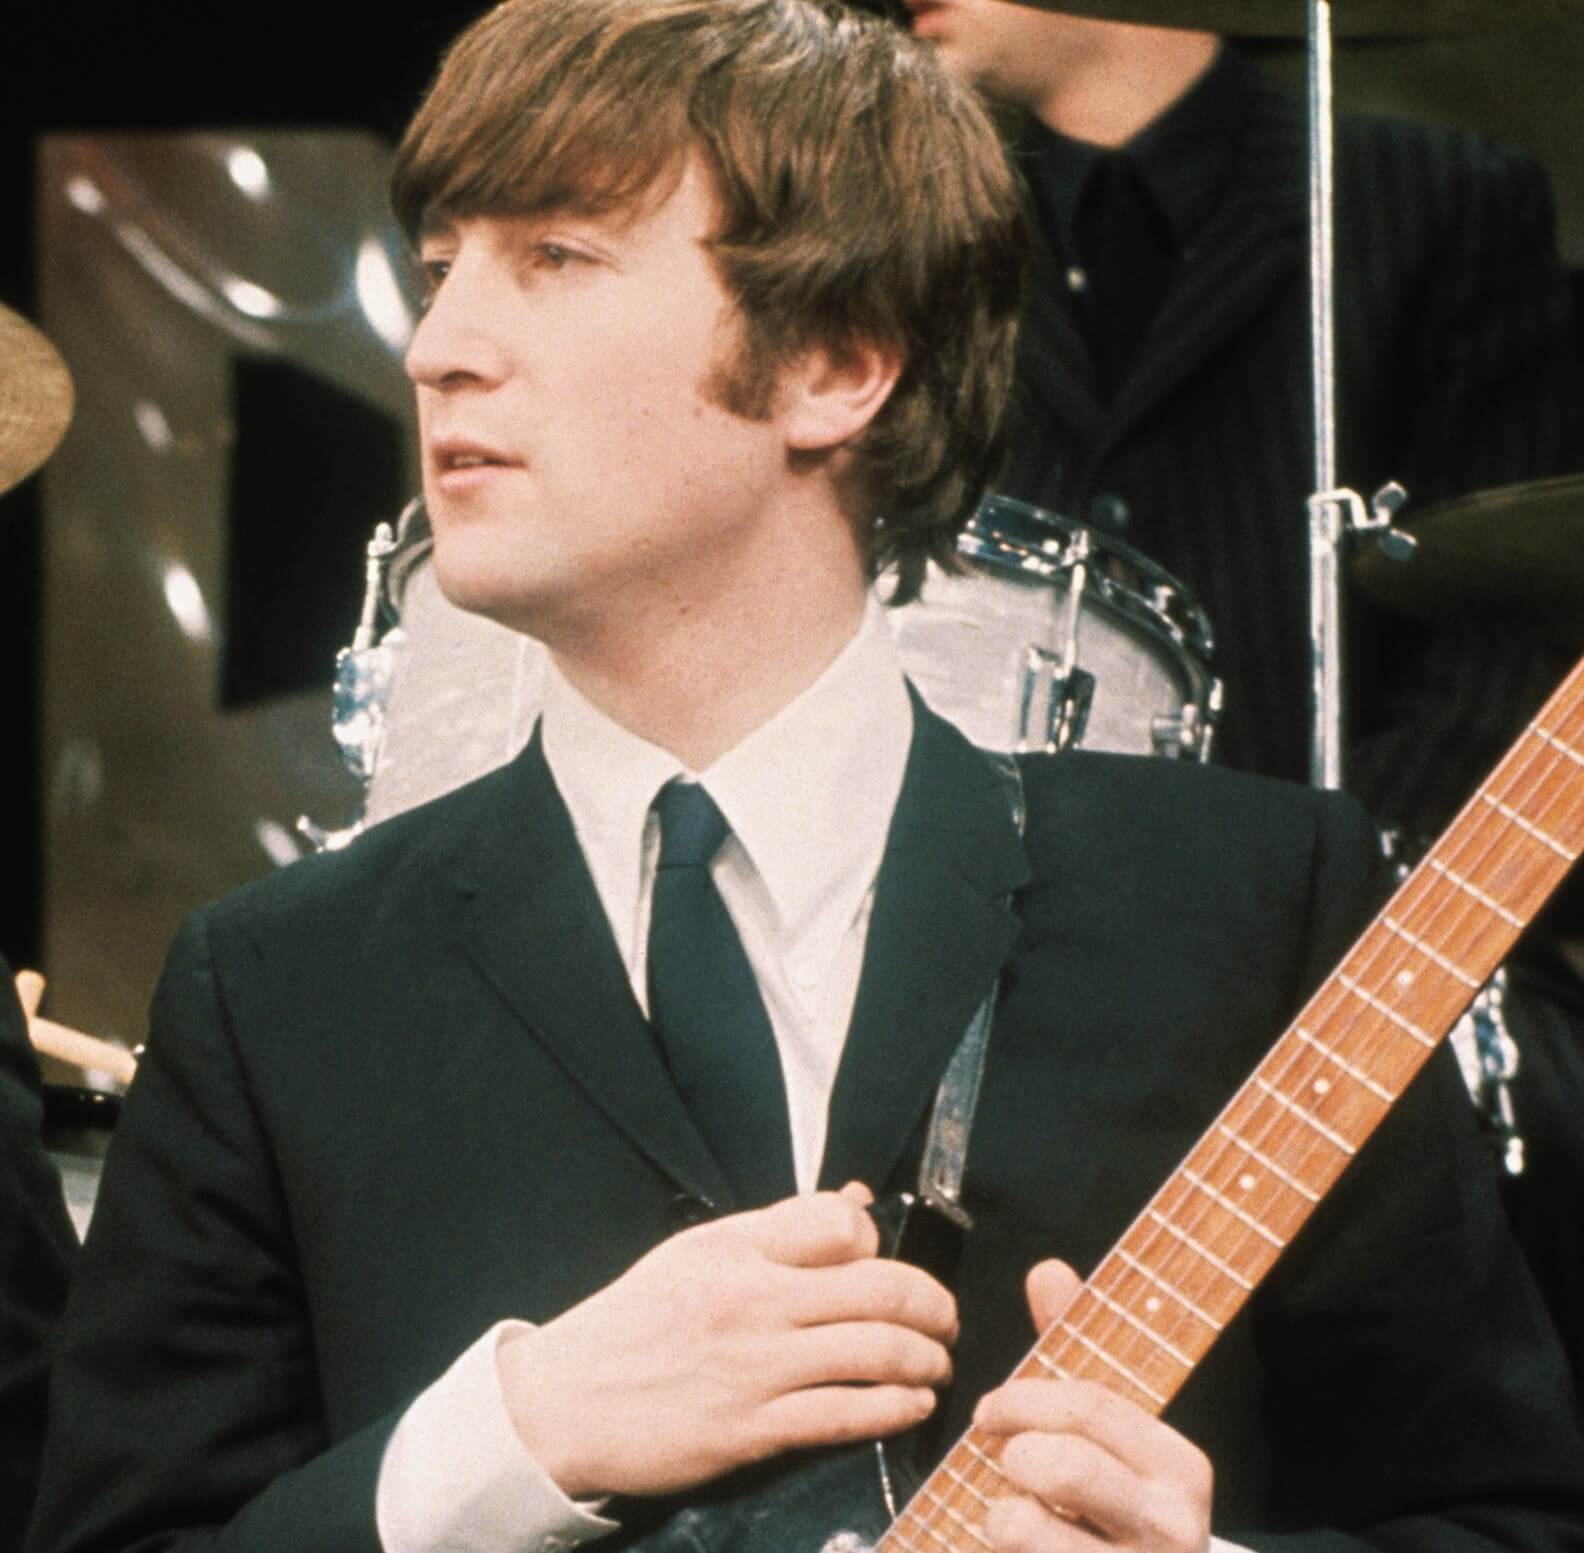 "Imagine" singer John Lennon holding a guitar